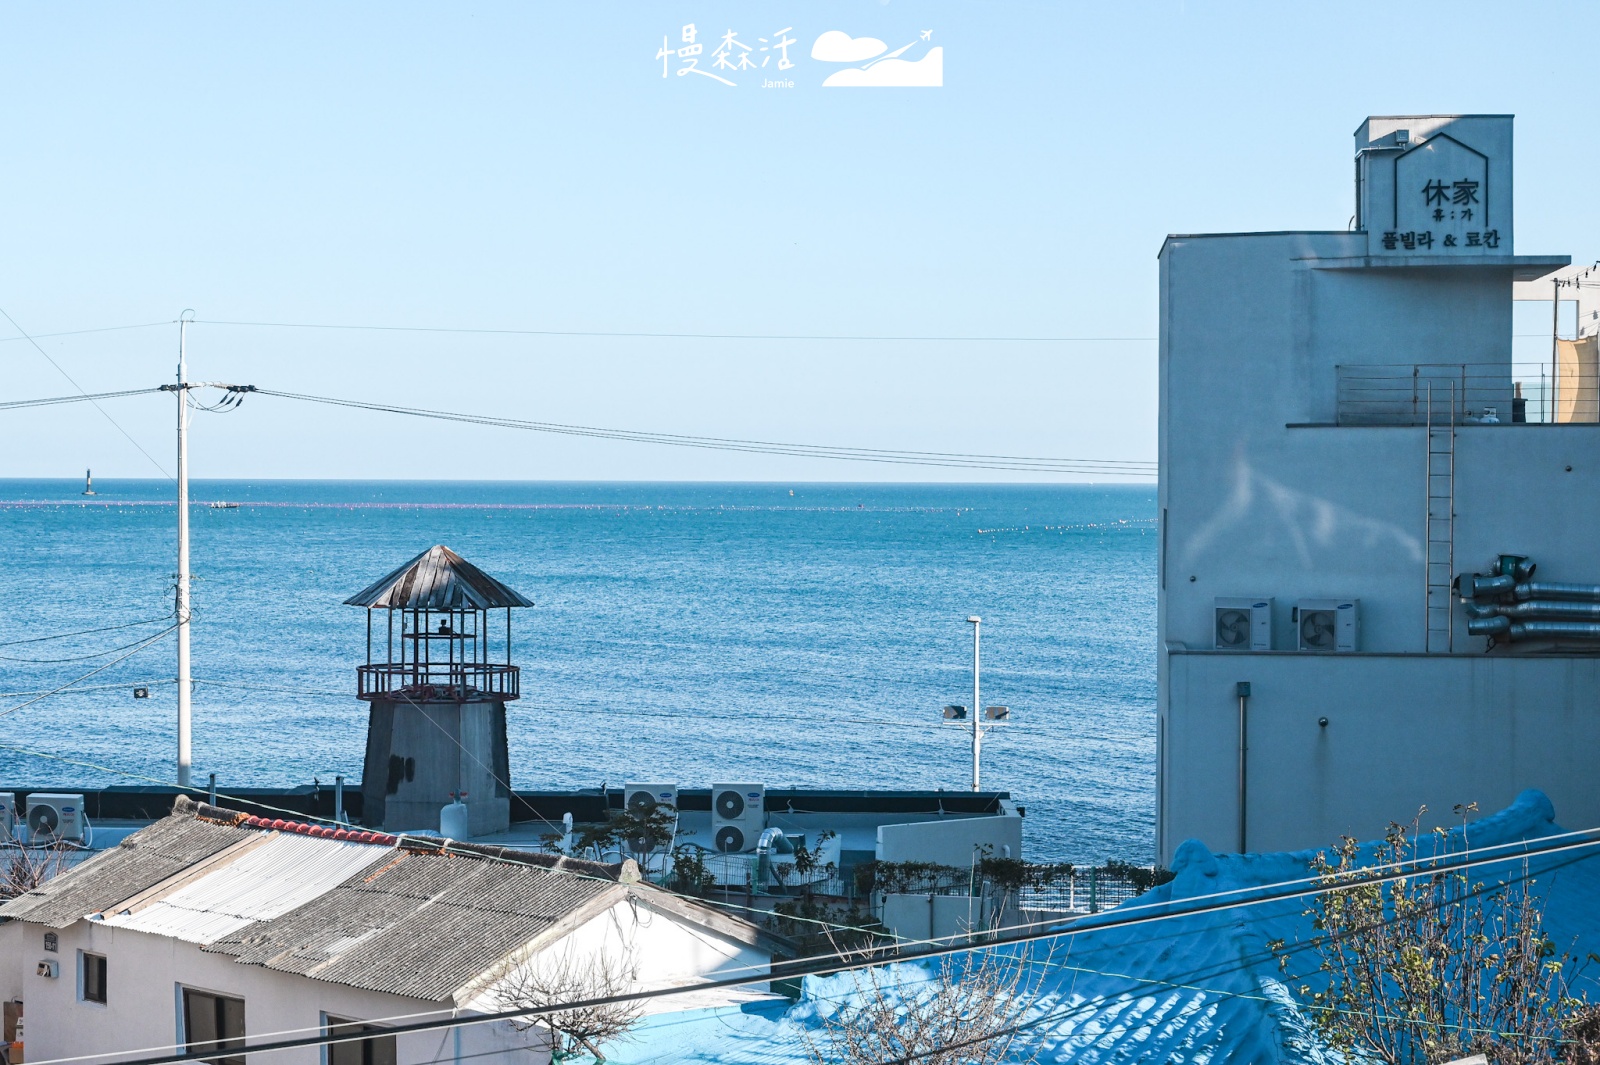 韓國釜山 海雲台藍線公園Blueline Park 搭乘濱海列車沿線風景